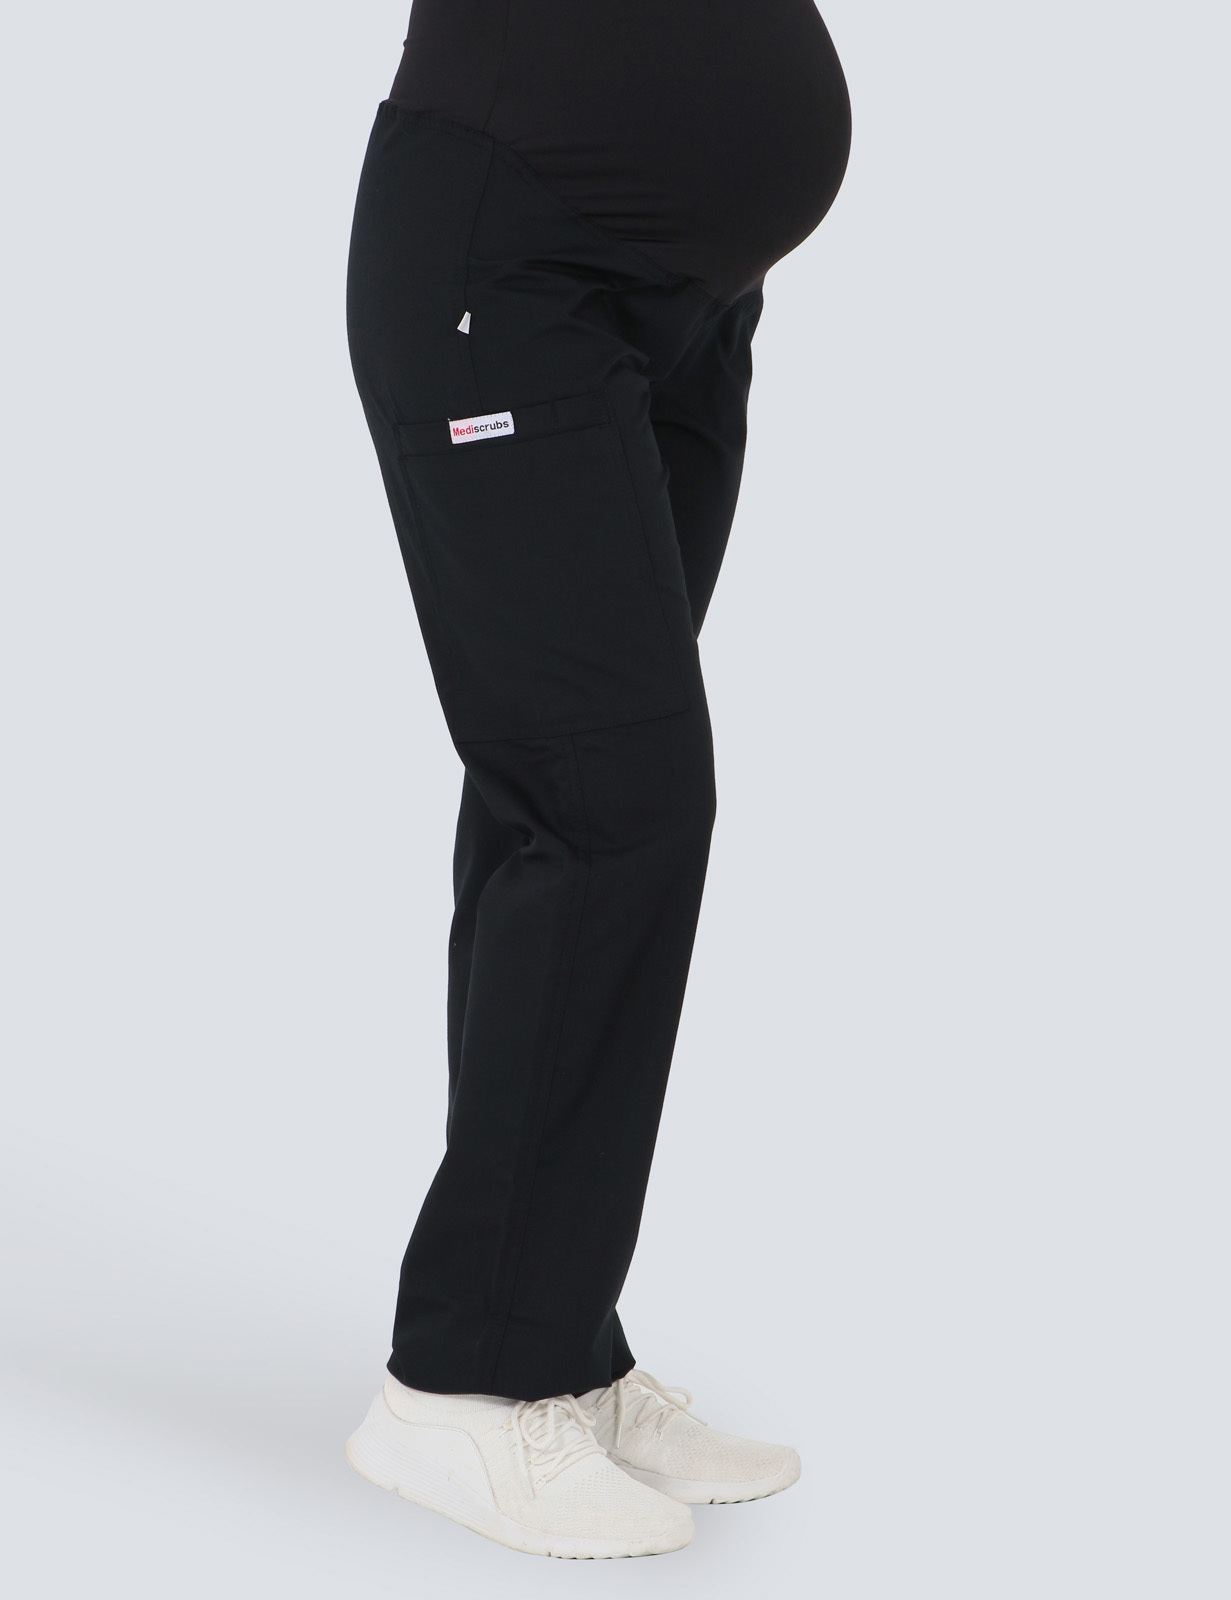 Maternity Pants - Black - 2X Large